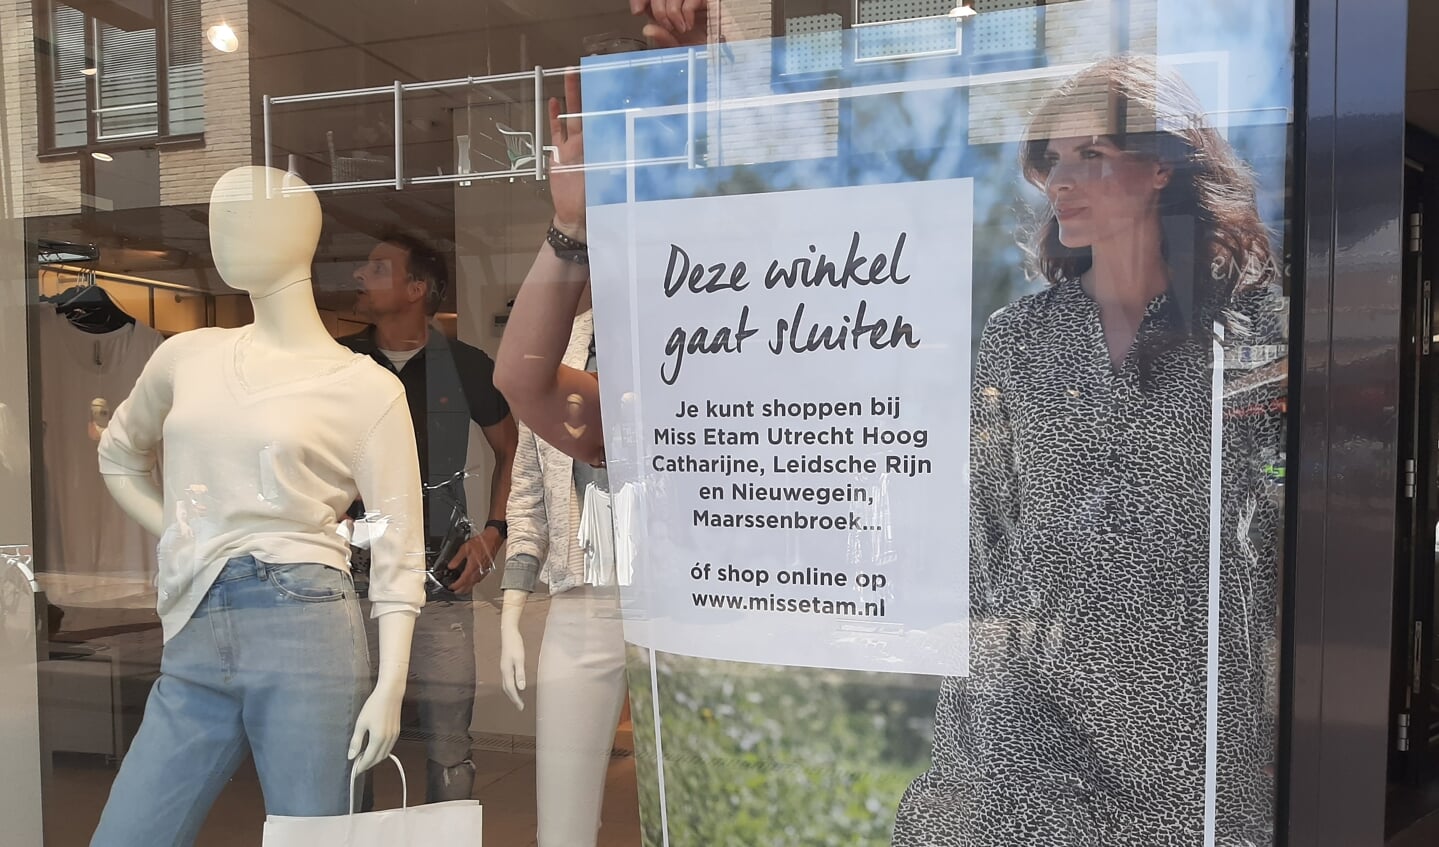 Vader fage Verwoesten Roei uit Winkeliers Het Rond zijn positief en maken plannen voor aantrekkelijk  winkelen - Houtens Nieuws | Nieuws uit de regio Houten